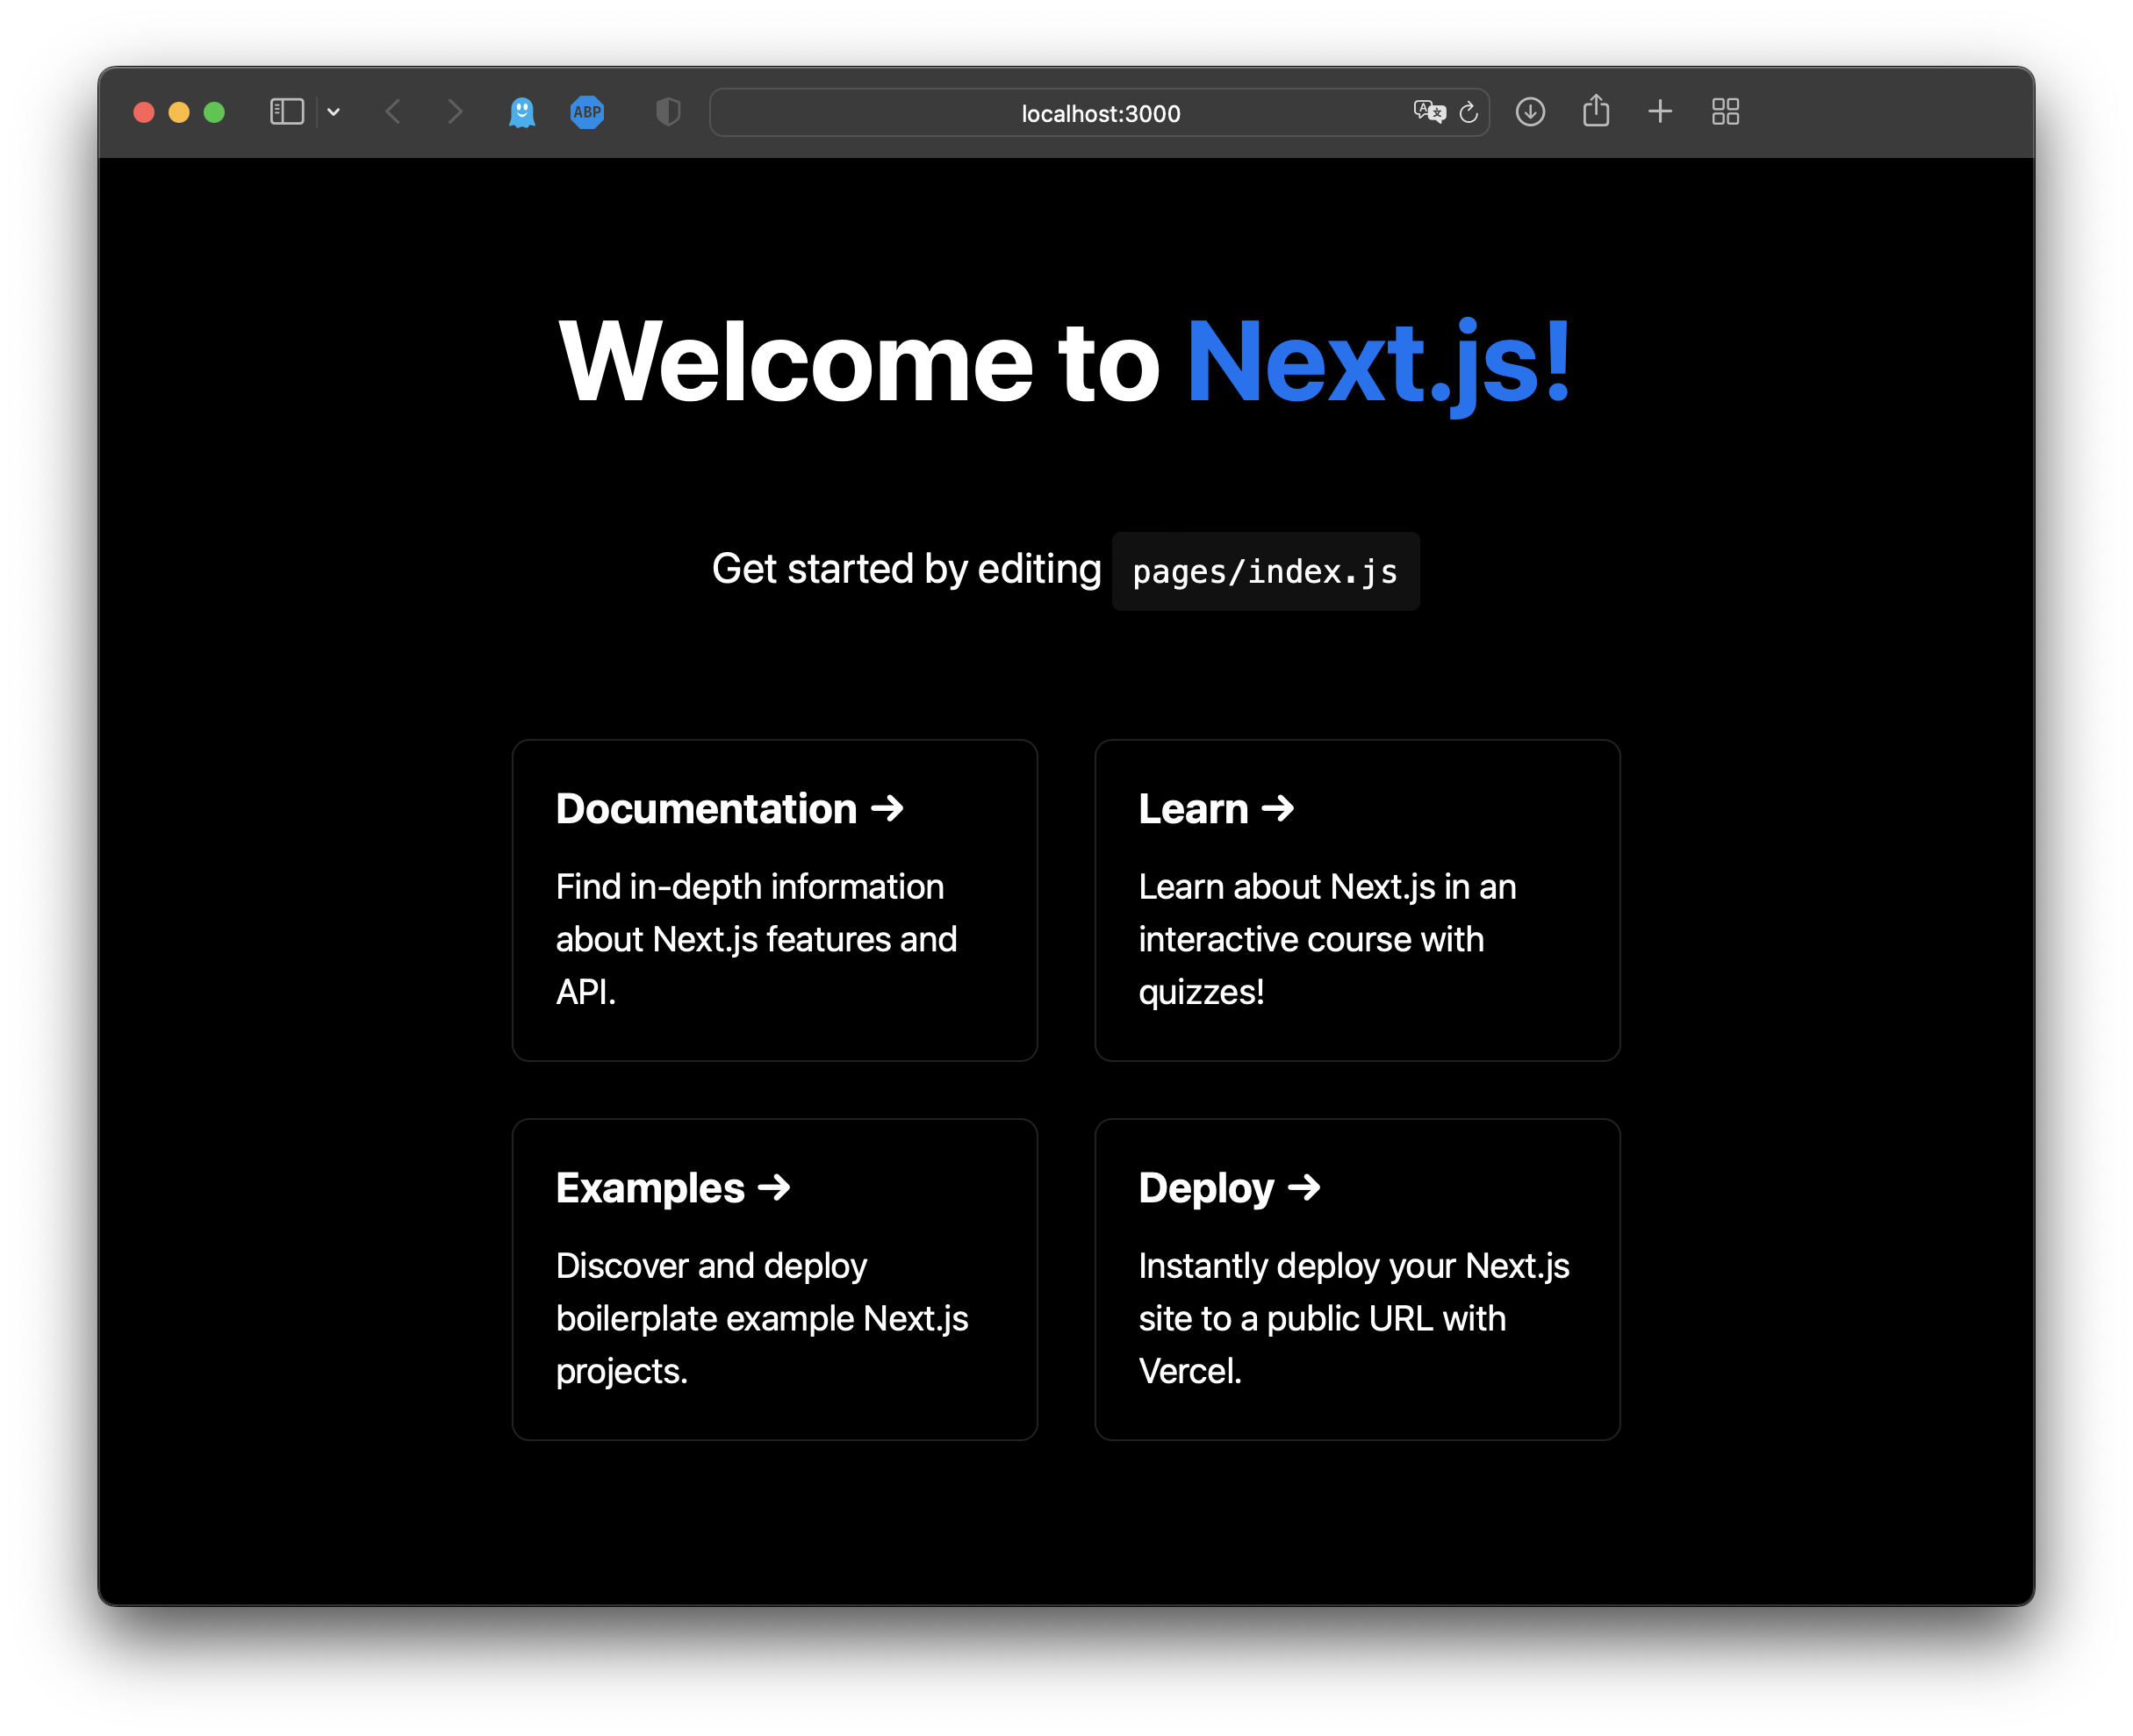 Next.js application running